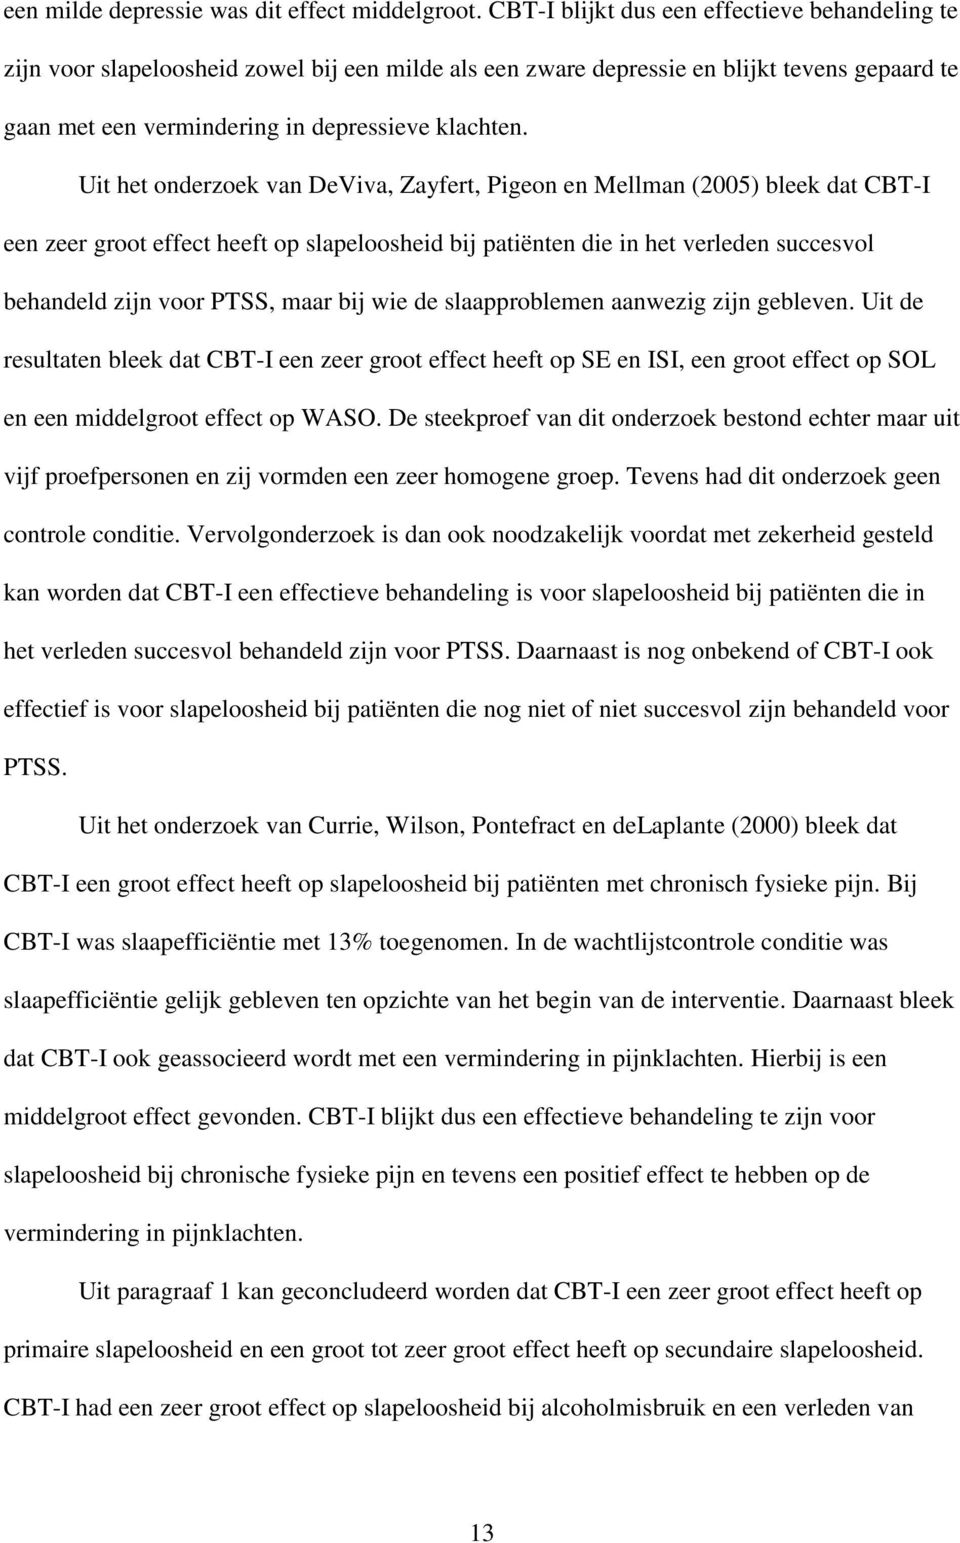 Uit het onderzoek van DeViva, Zayfert, Pigeon en Mellman (2005) bleek dat CBT-I een zeer groot effect heeft op slapeloosheid bij patiënten die in het verleden succesvol behandeld zijn voor PTSS, maar